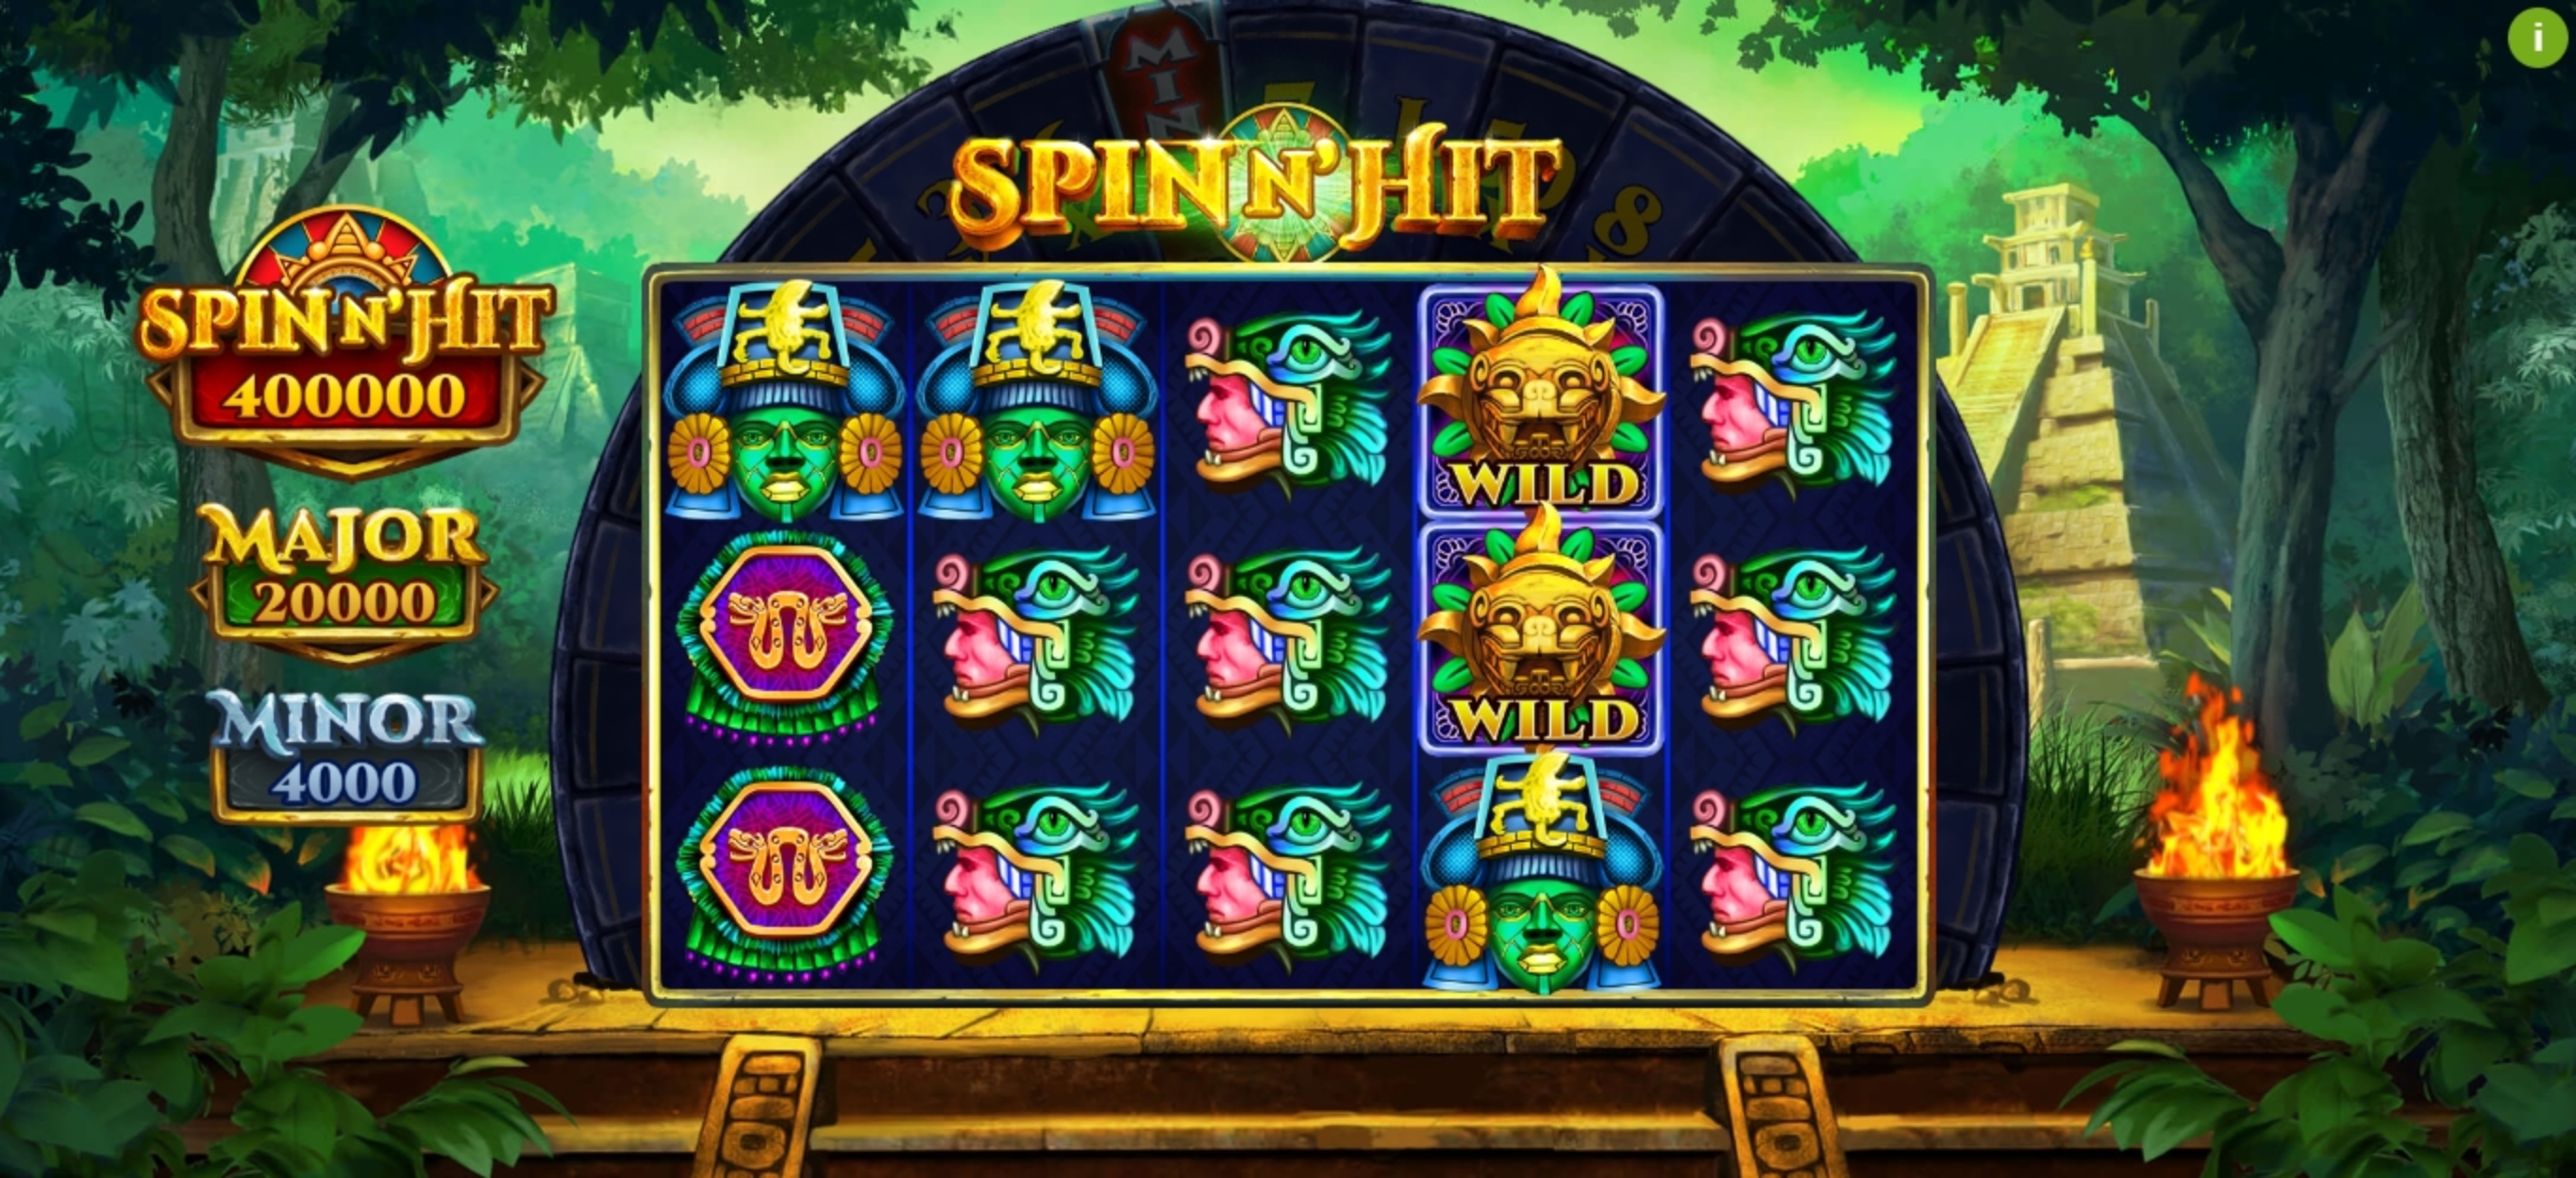 Reels in Spin N Hit Slot Game by PariPlay